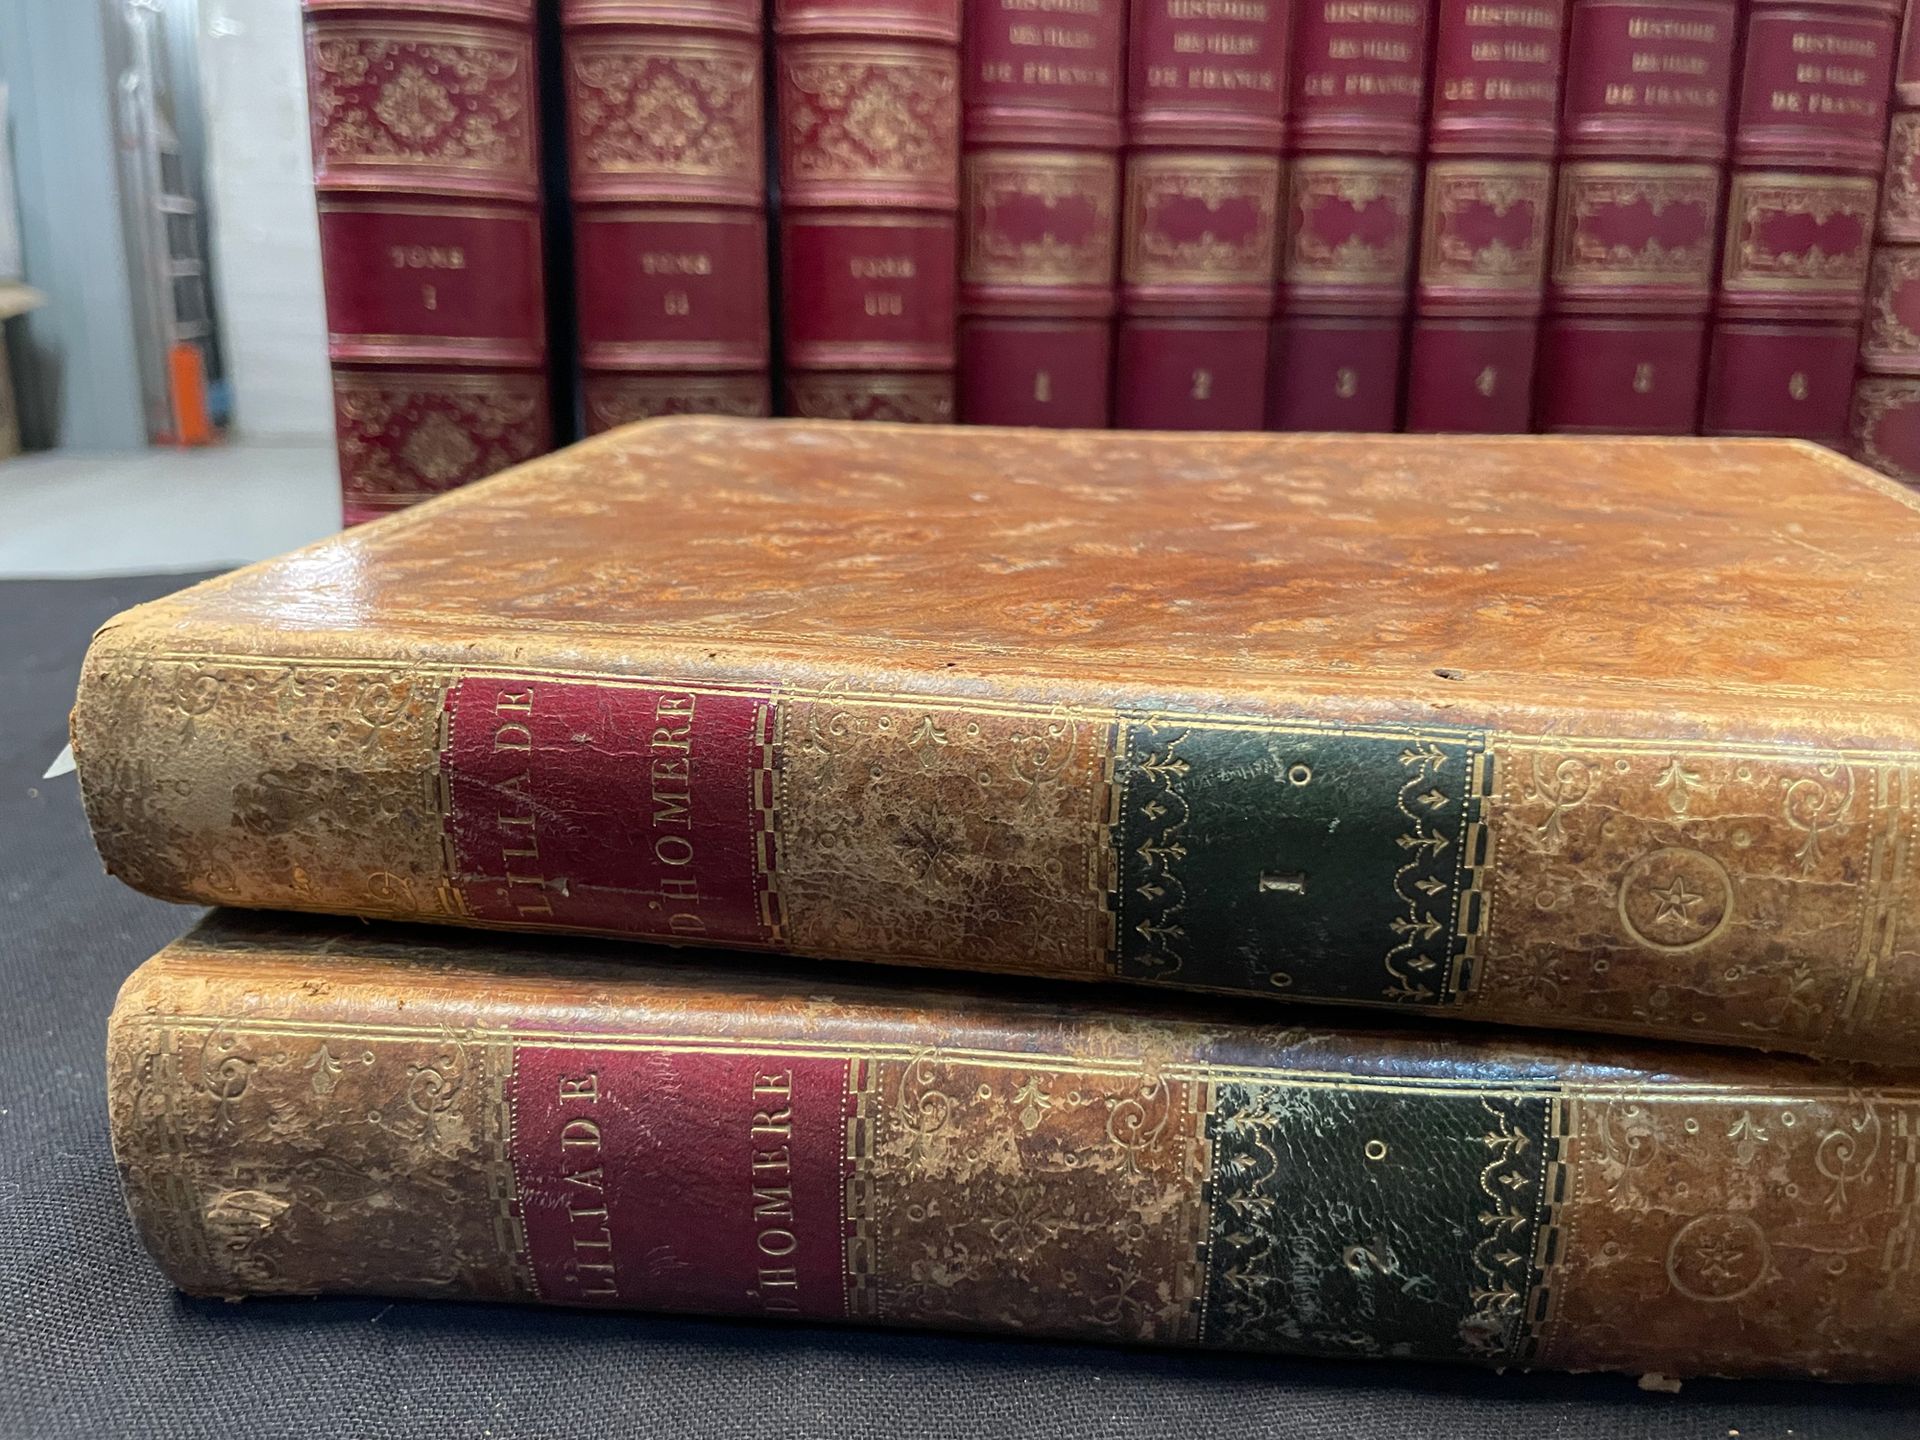 HOMERE 伊利亚特和奥德赛》。1795年。
2卷
，原样。